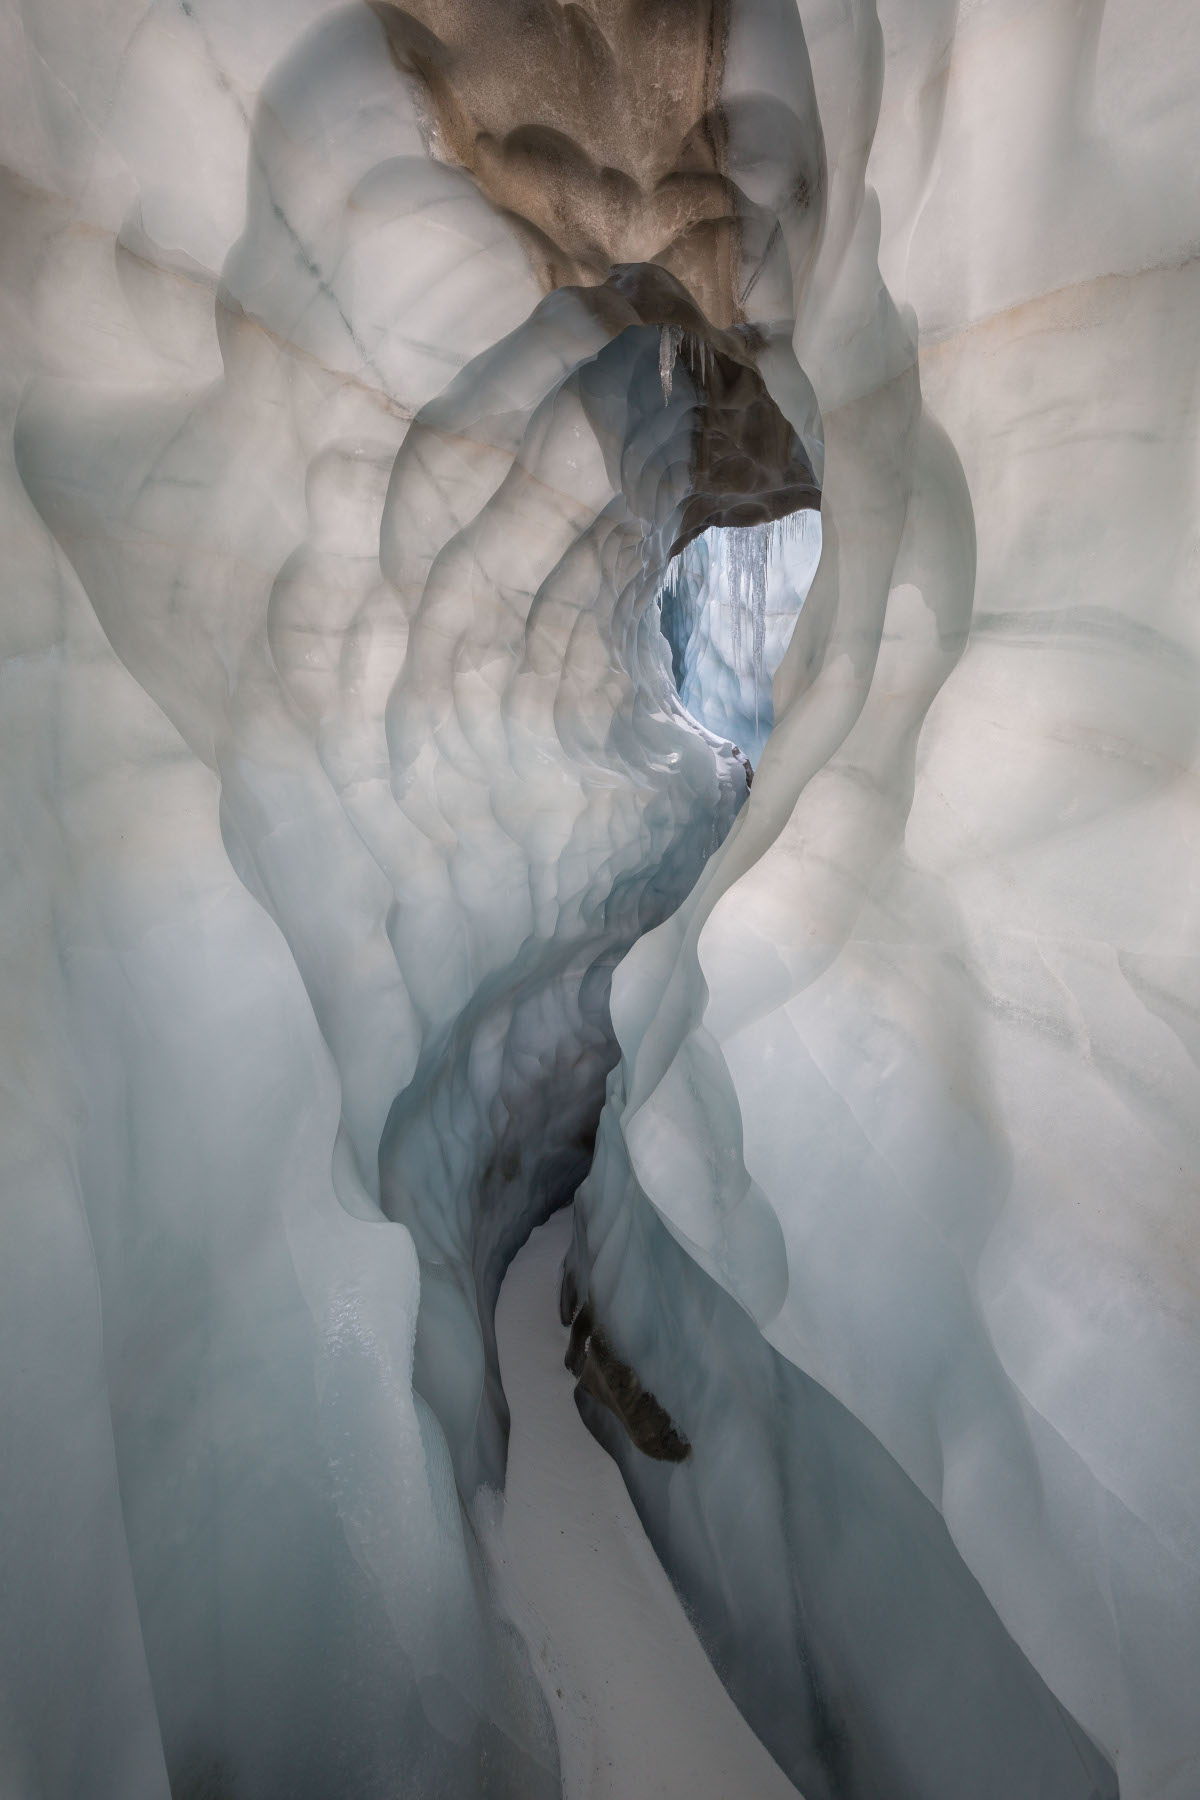 11 octobre 2021. Moulin latéral de la grande doline, glacier de la Plaine Morte. Très grande galerie en forme de trou de serrure, avec névé brun au plafond et arrivée d'un moulin dont on voit la clarté au loin.